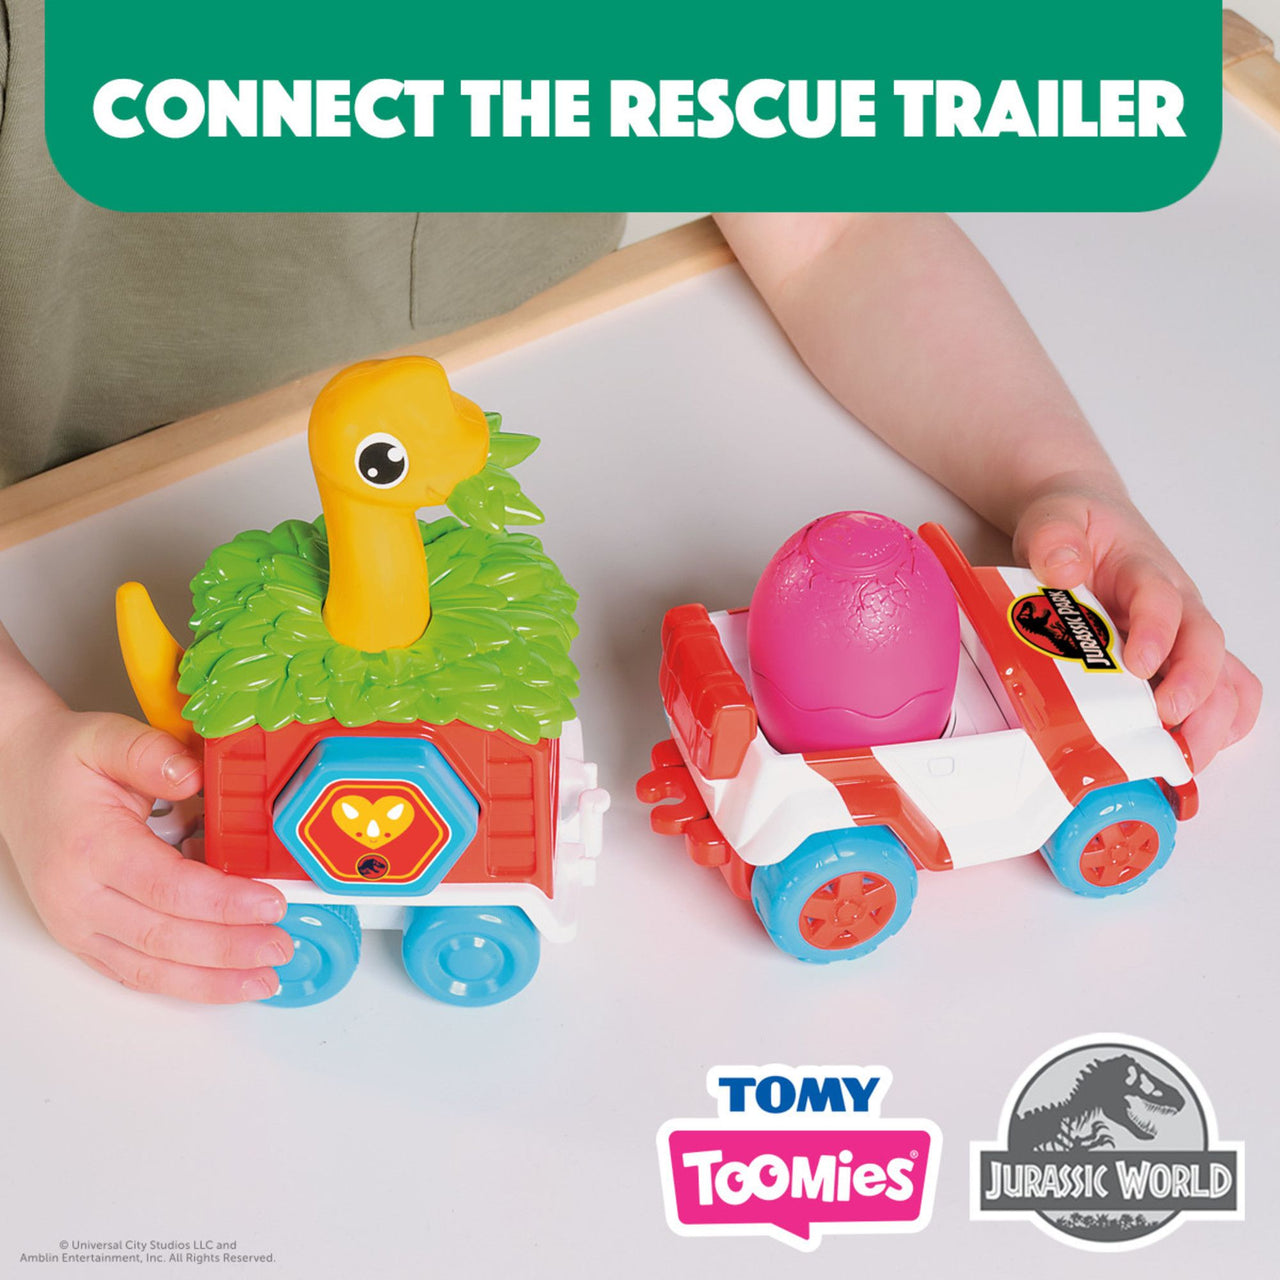 TOOMIES - Dino Rescue Ranger